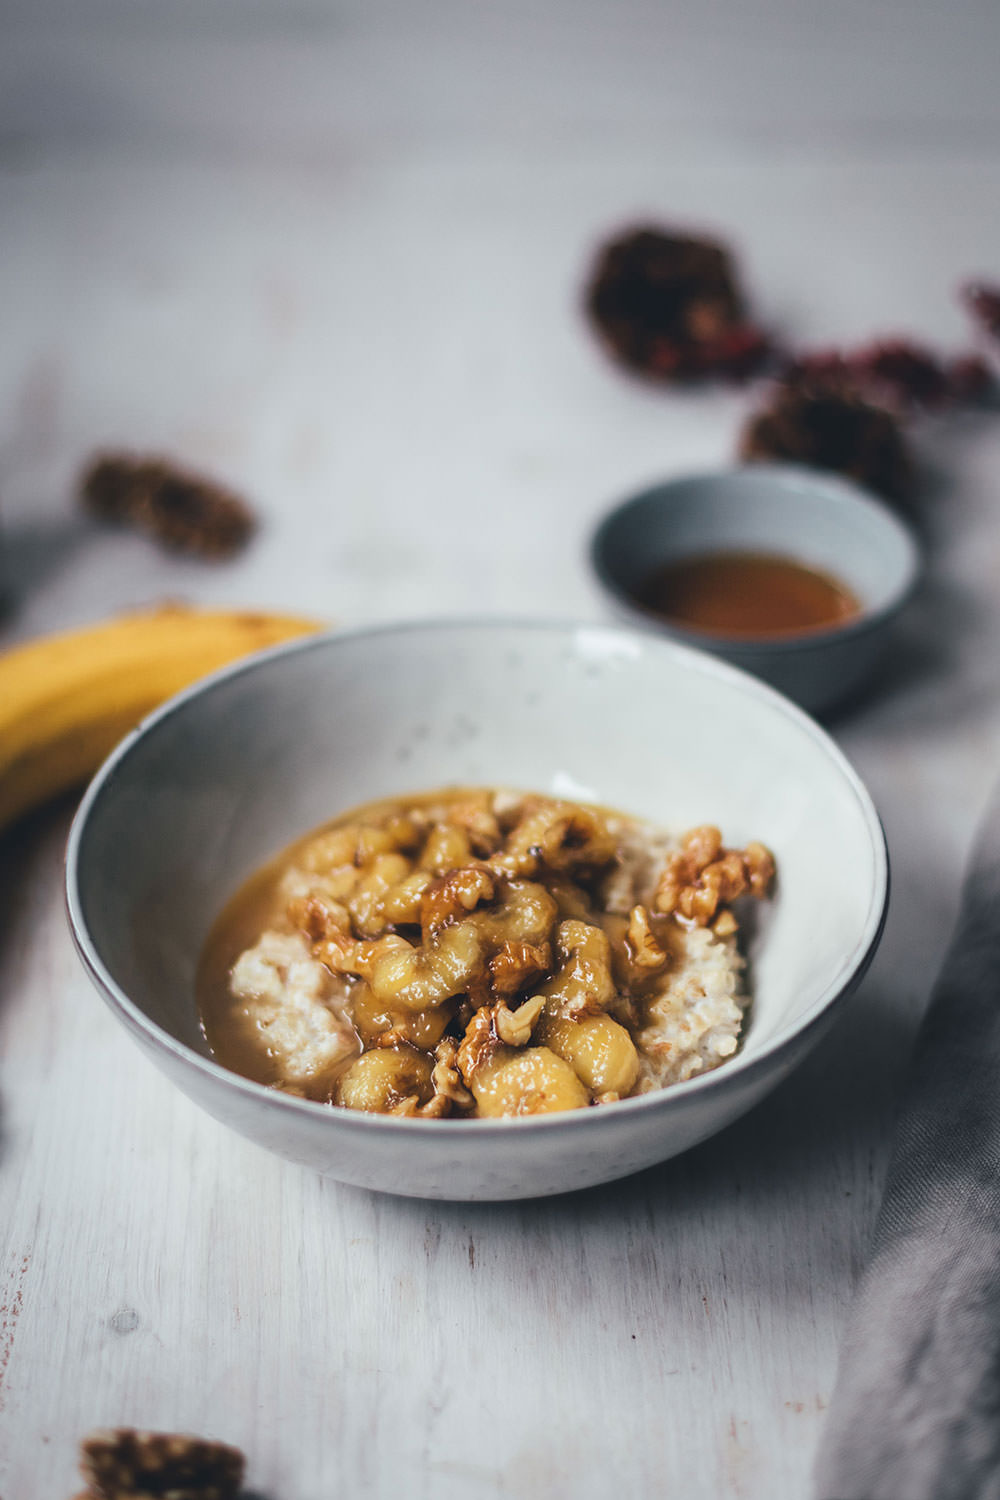 Rezepte für Porridge mit Bananen, Ahornsirup und Walnüssen | das perfekte Frühstück in Herbst und Winter | moeyskitchen.com #porridge #frühstück #breakfast #haferbrei #haferflocken #bananen #rezepte #foodblogger